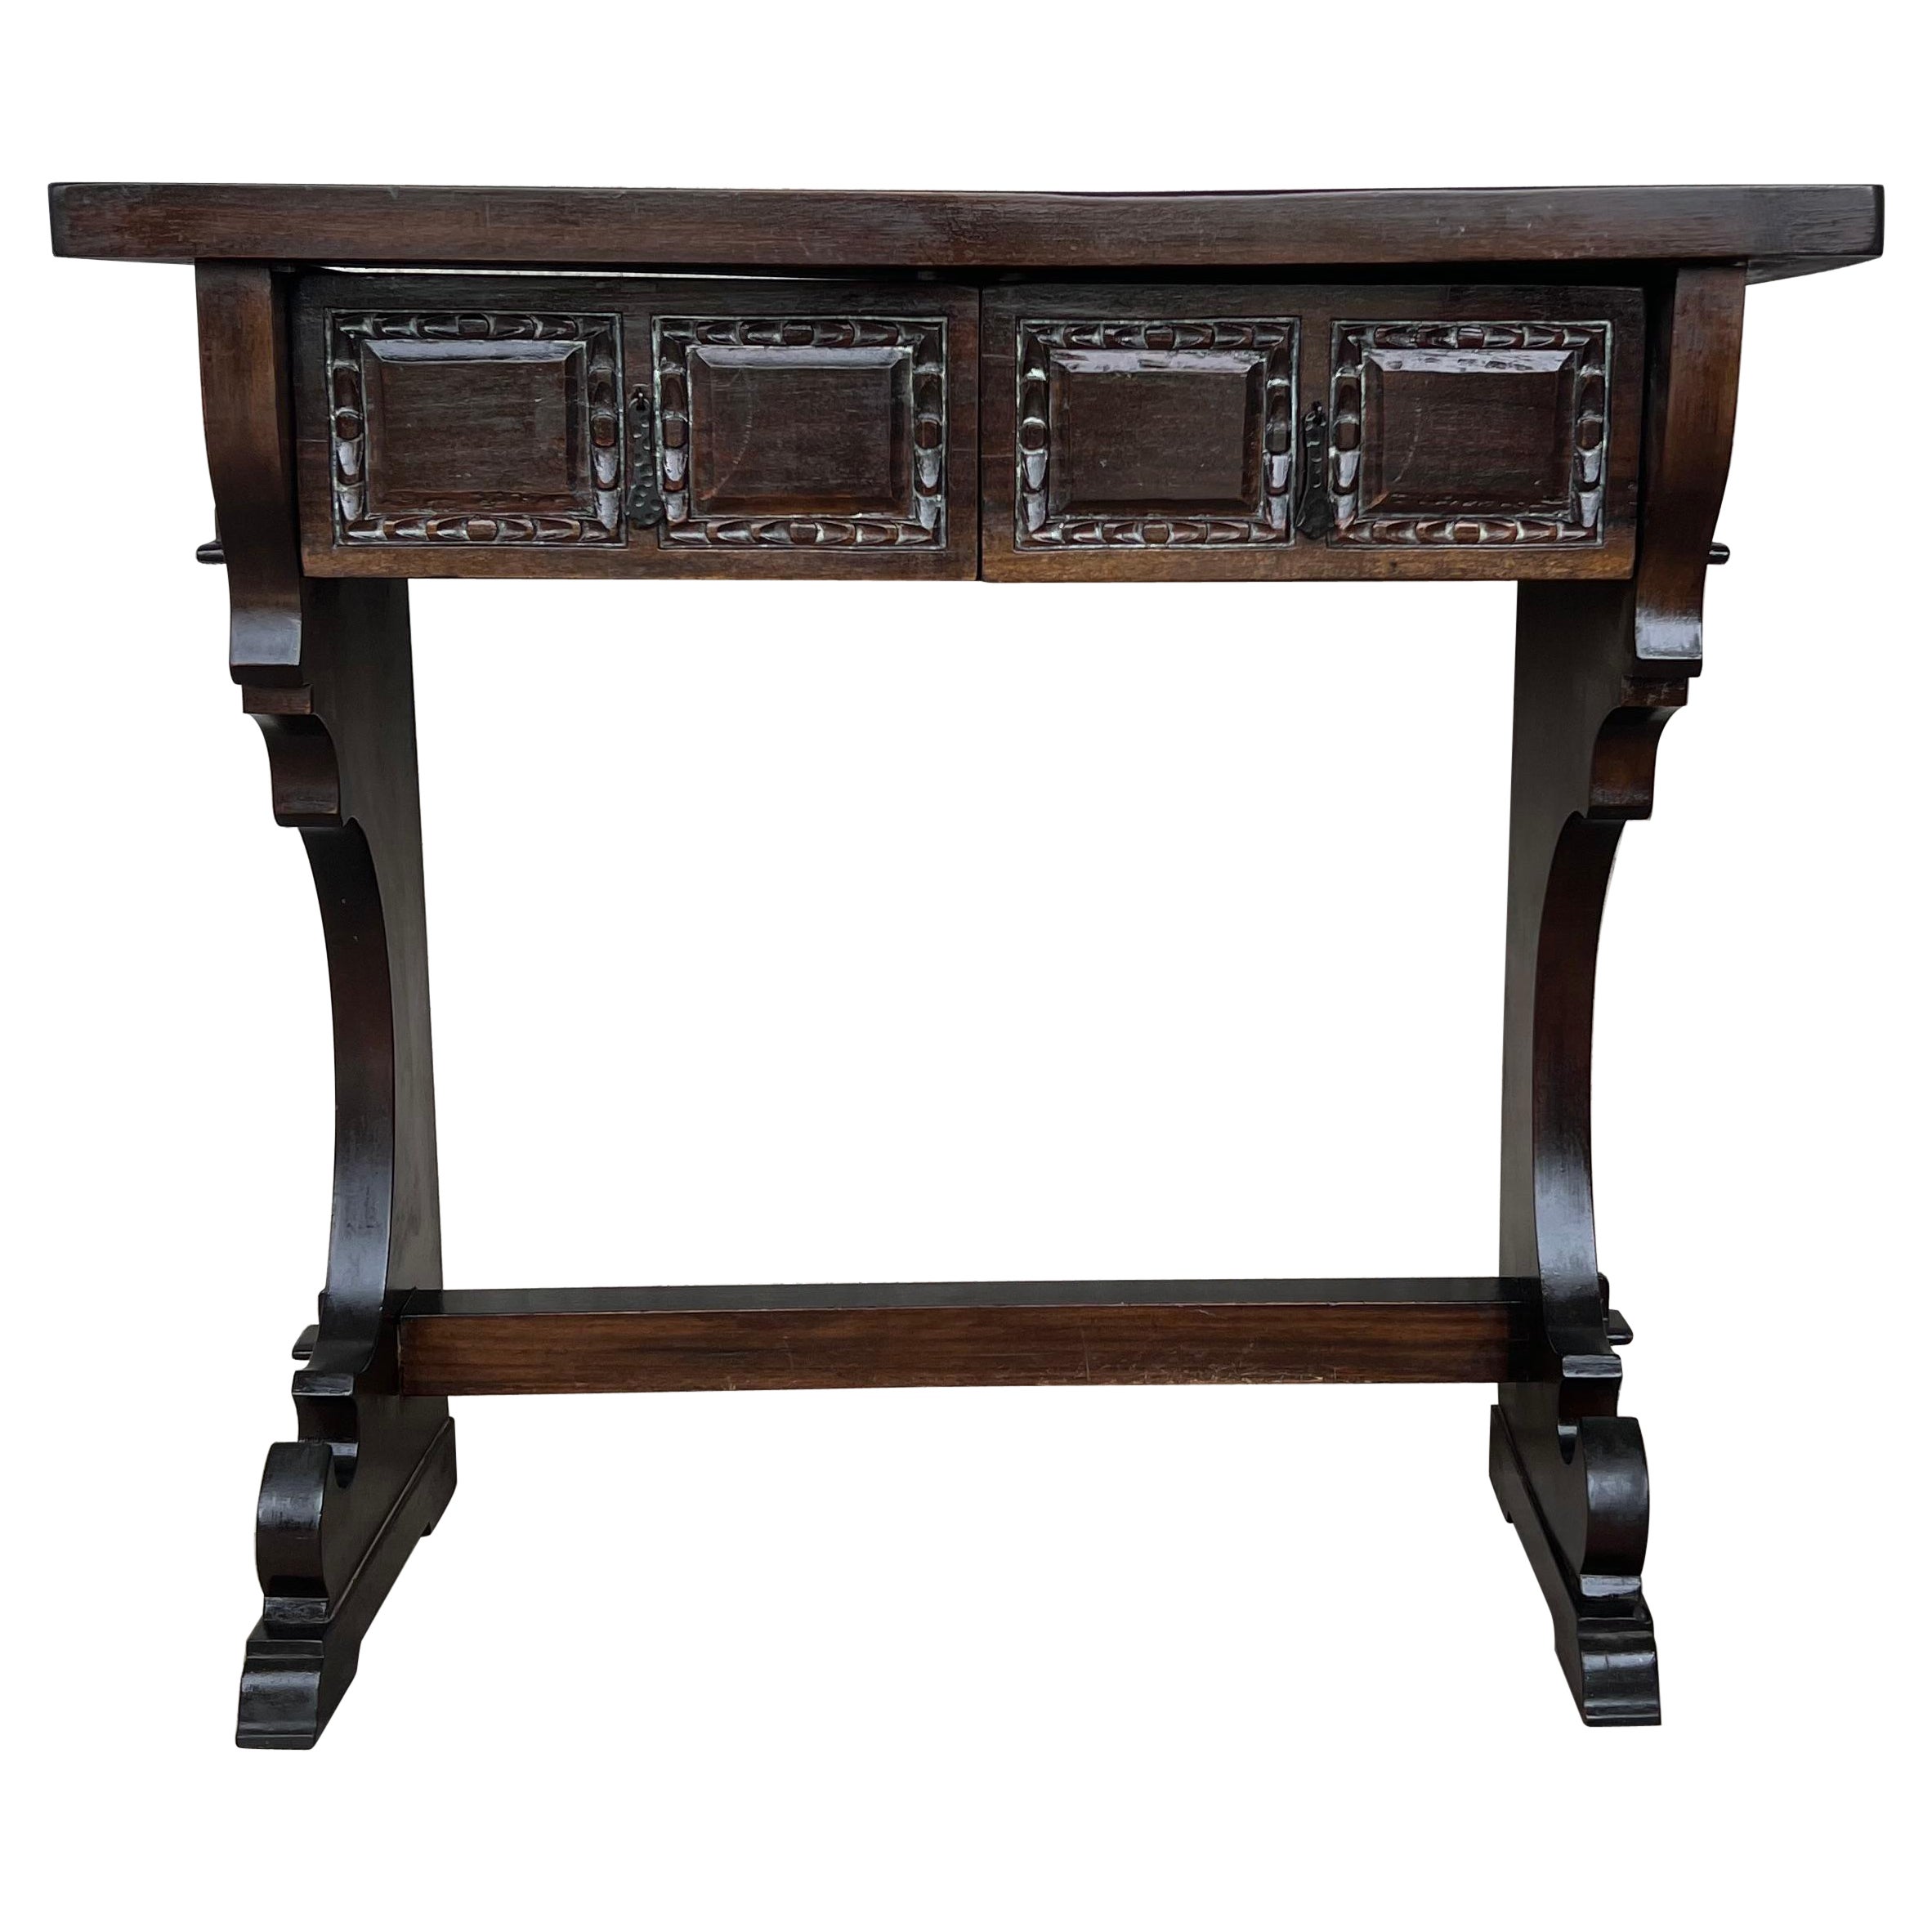 Table console coloniale espagnole étroite avec deux tiroirs et quincaillerie en fer